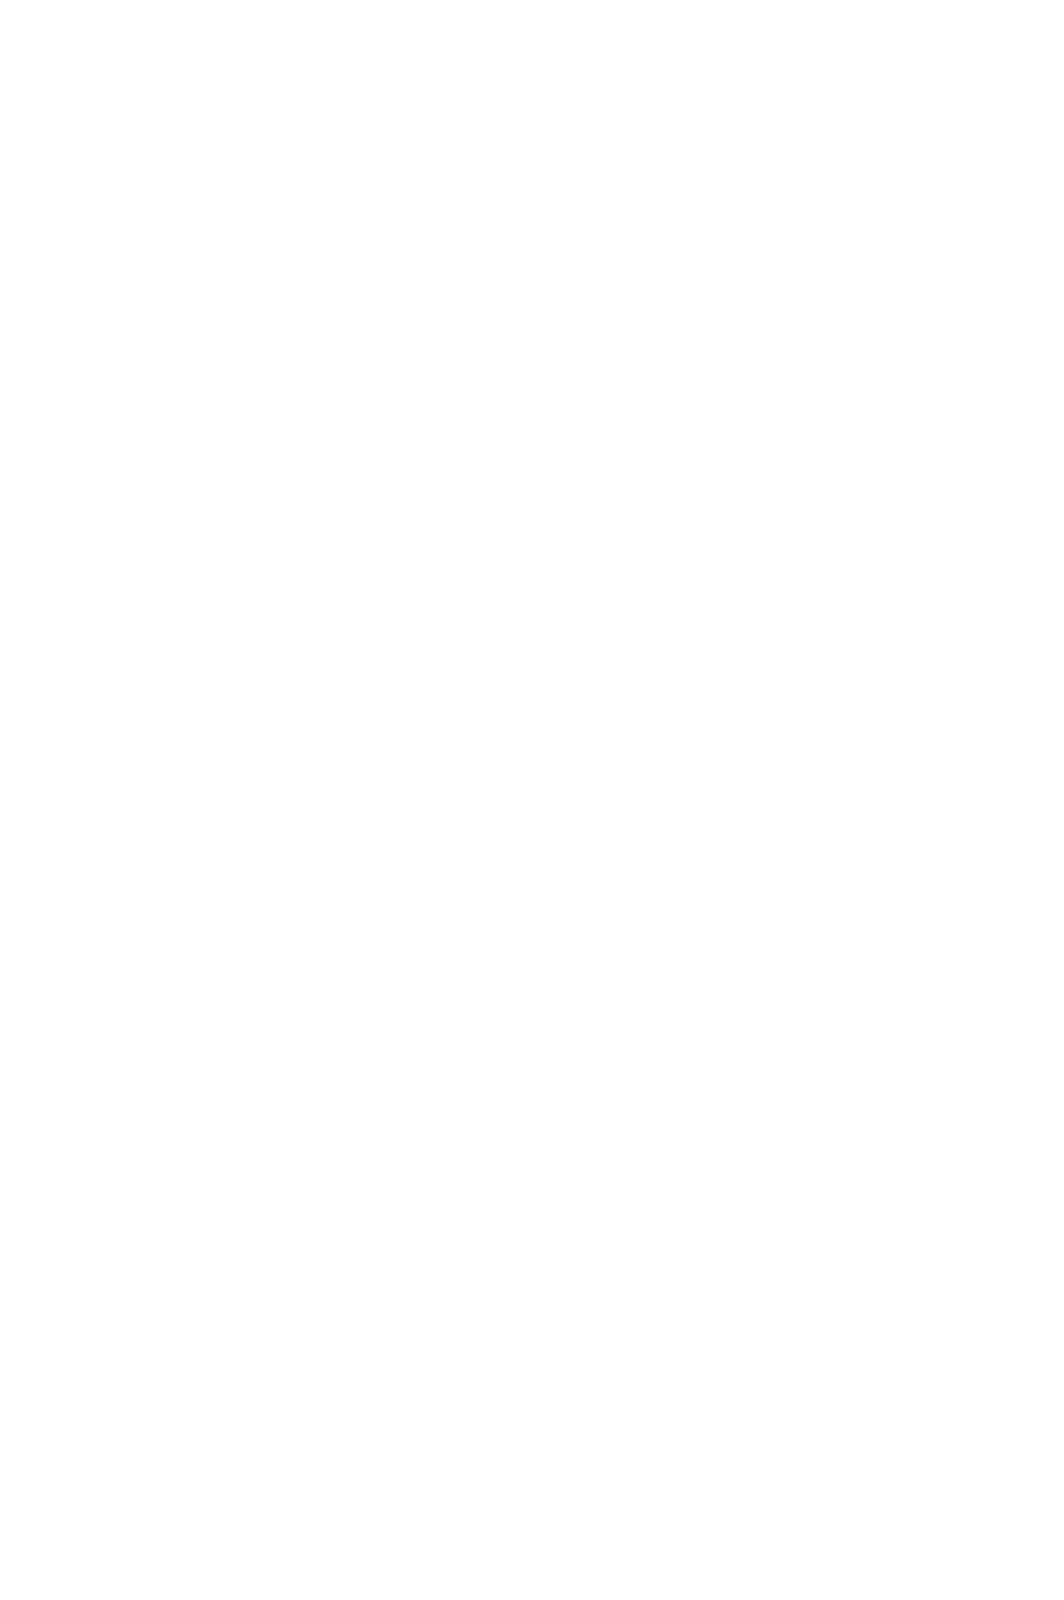 『魔進戦隊キラメイジャー』キラメイレッド／熱田充瑠を演じるZero PLANET・小宮璃央、役とは「性格が似通ってるところがある」サムネイル画像!